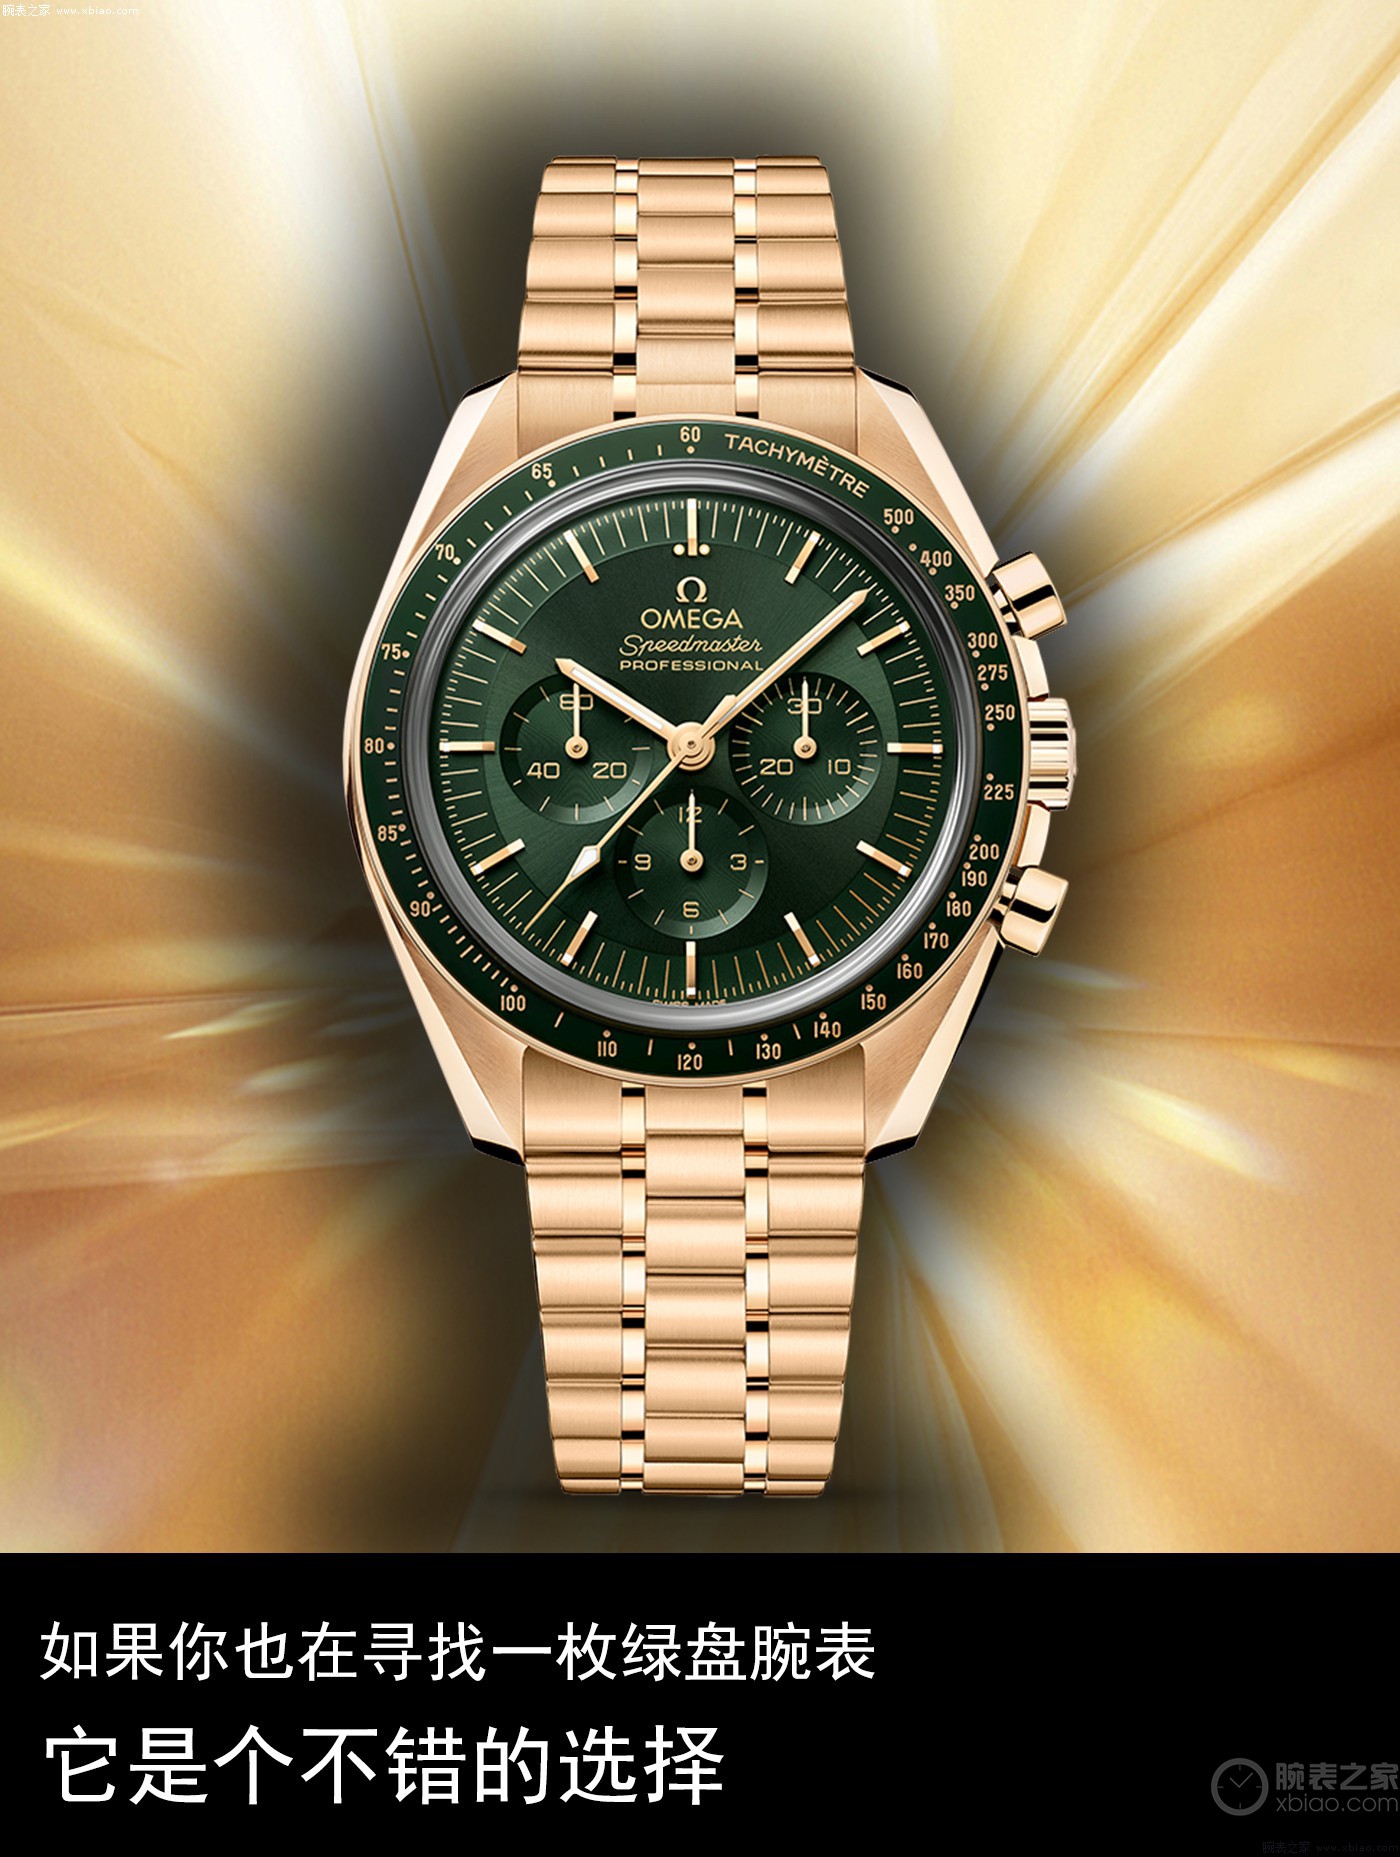 情不自禁：如果你也在寻找一枚绿盘腕表，它是个不错的选择